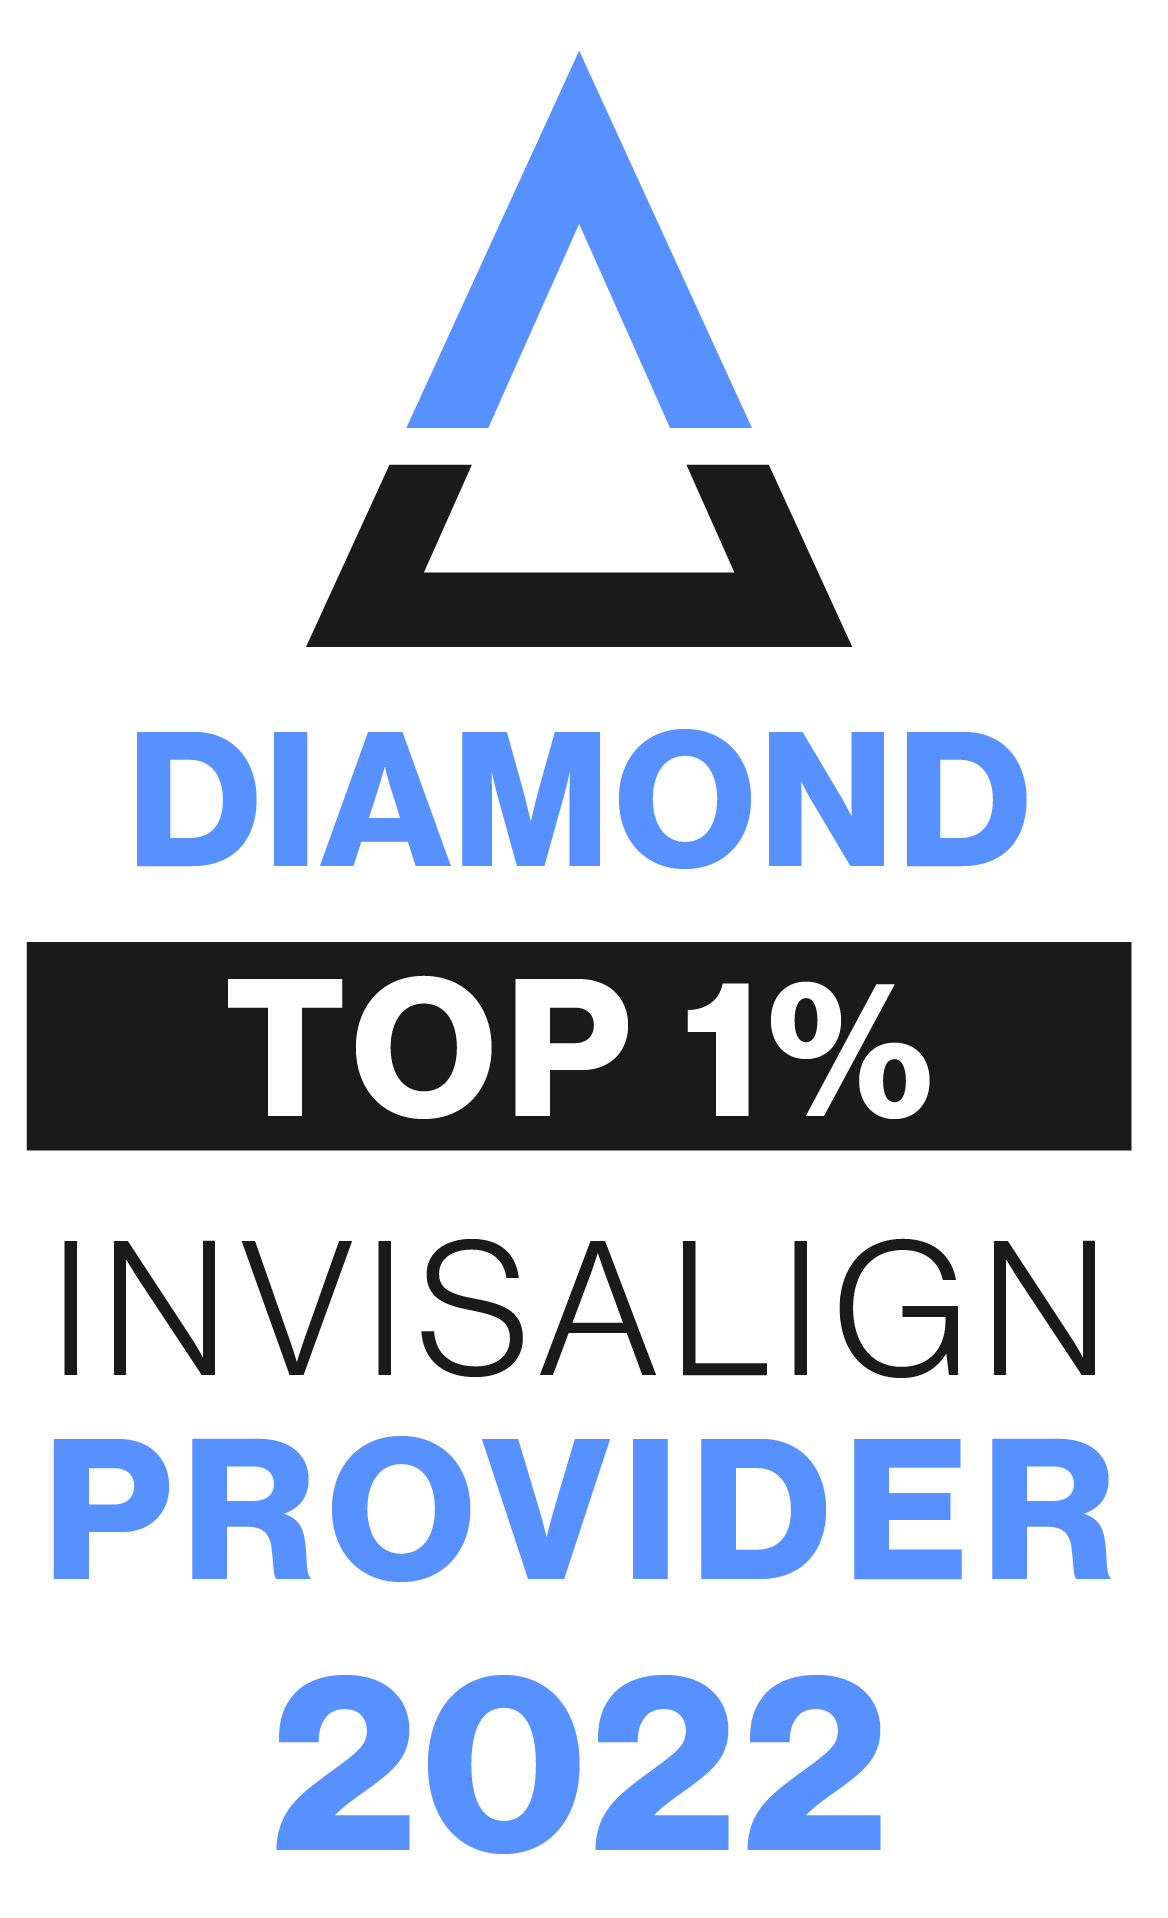 diamon top 1% invisalign provider